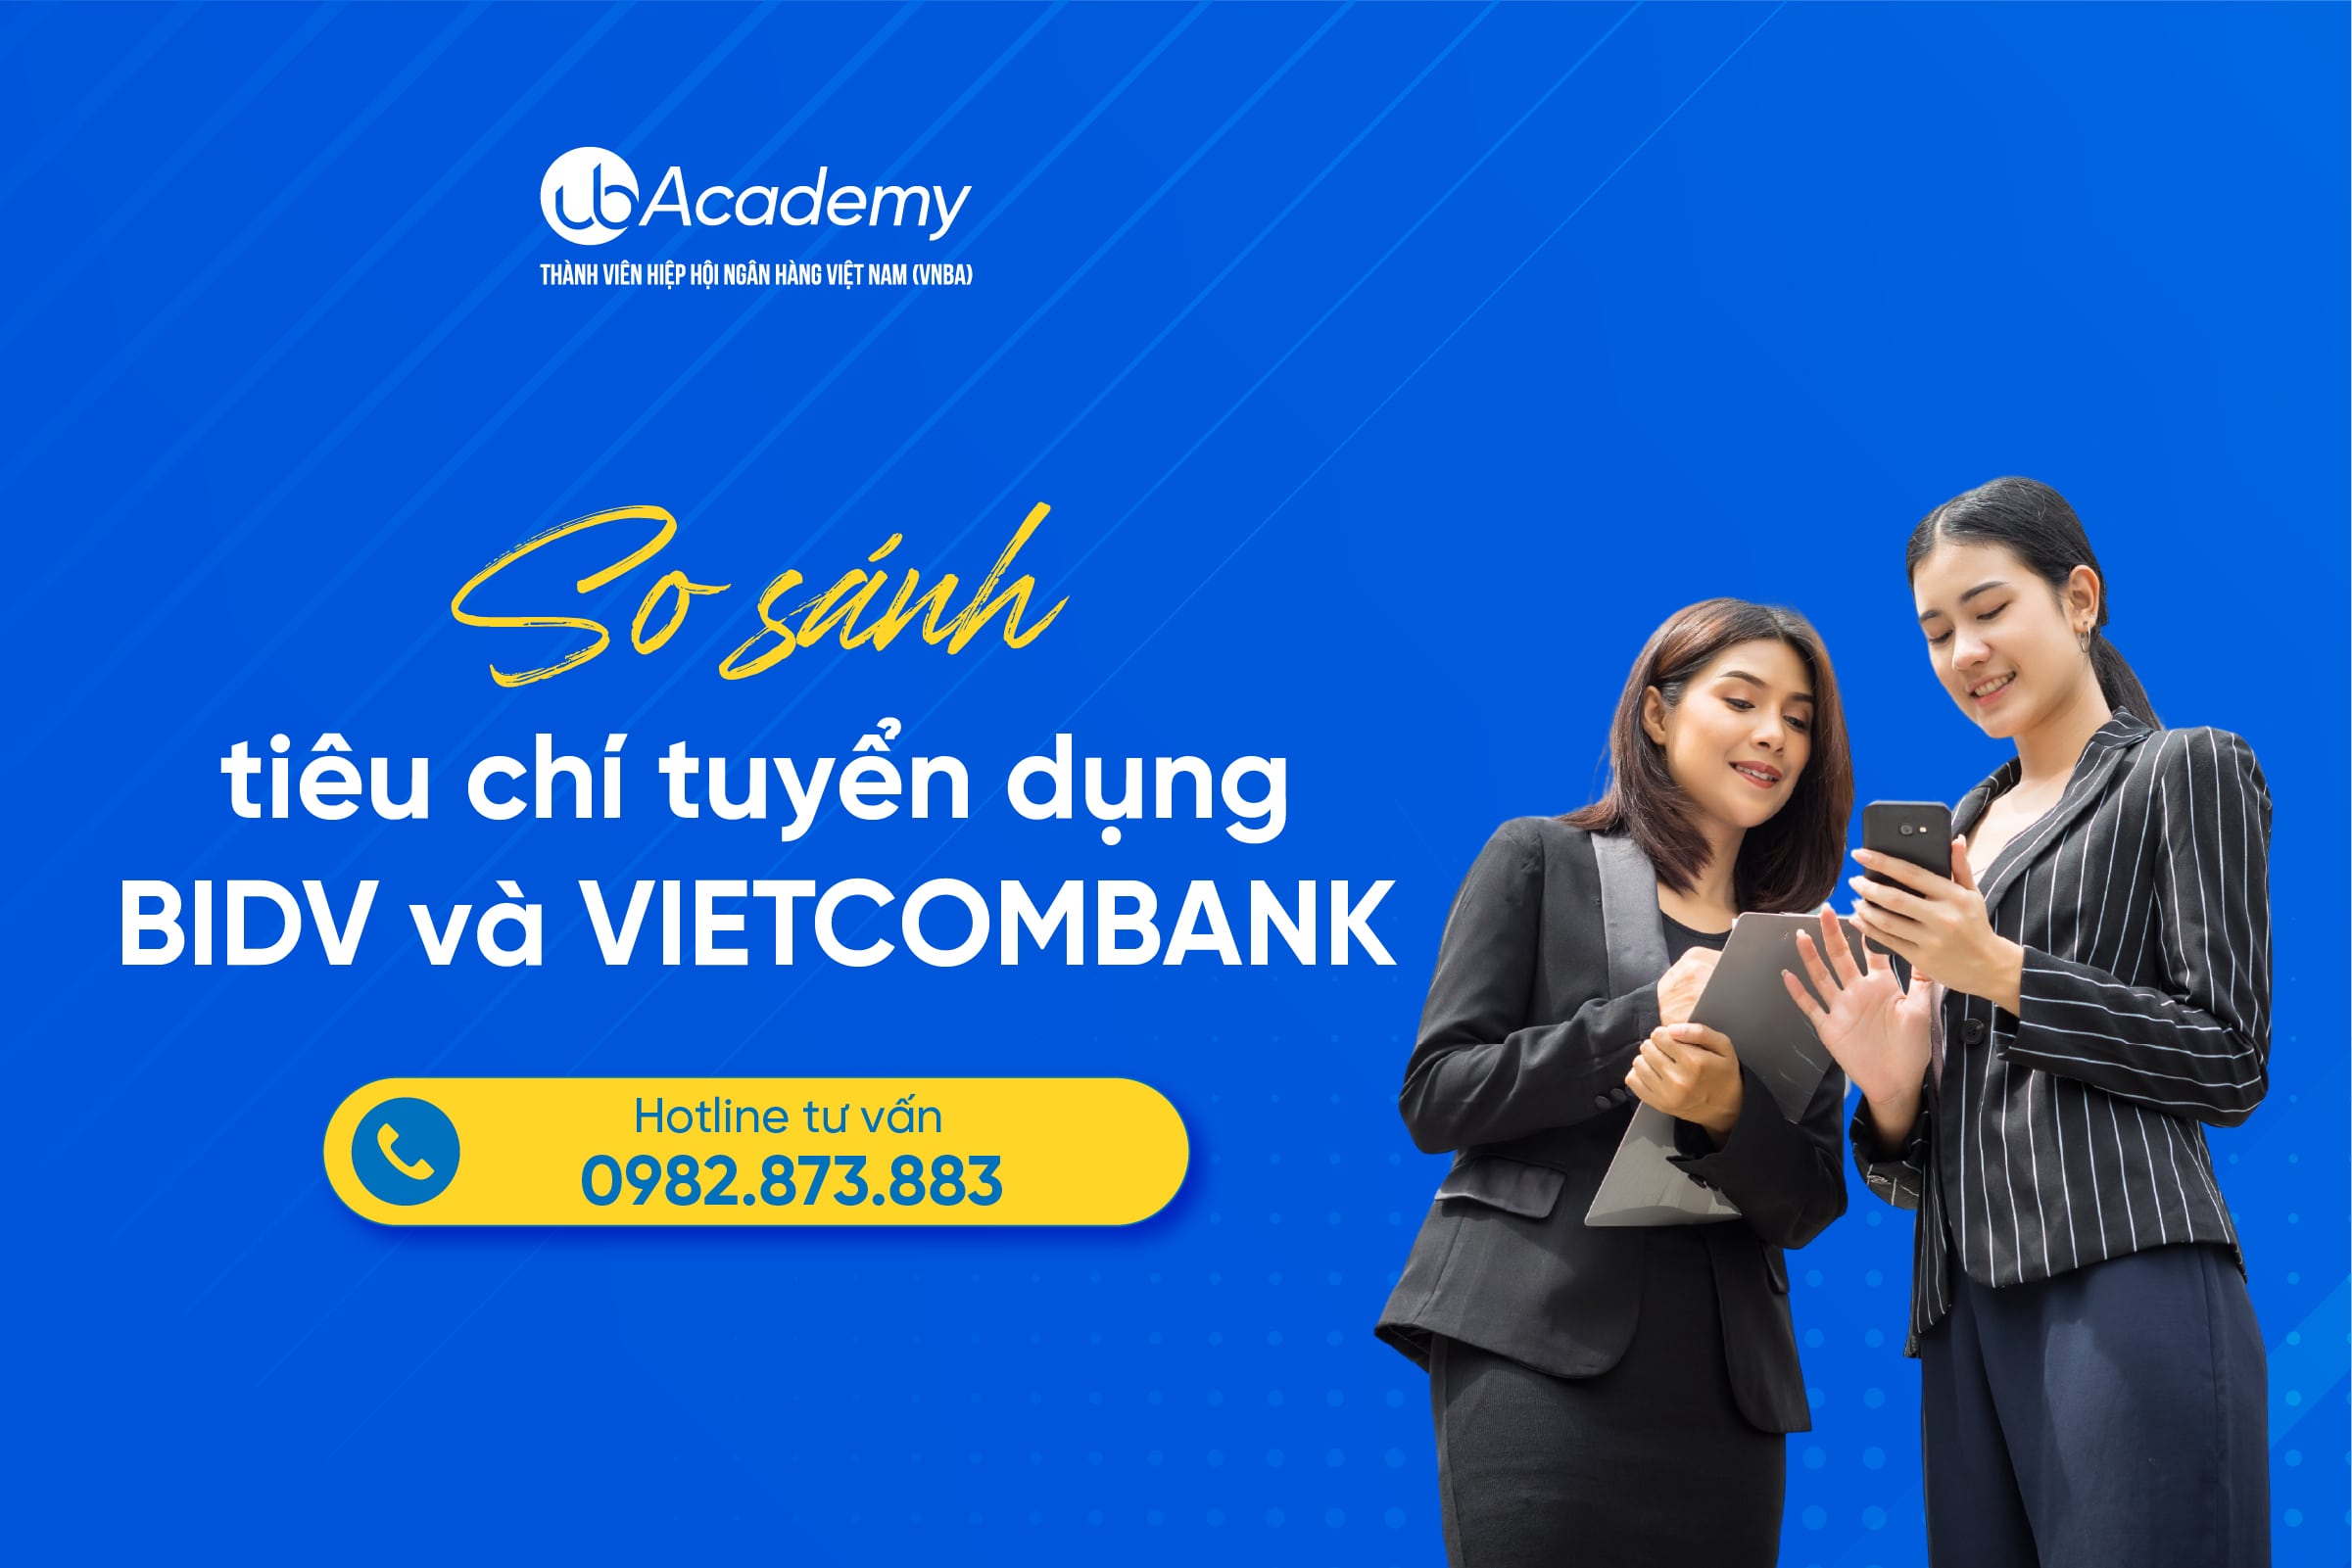 So sánh tiêu chí tuyển dụng ngân hàng Vietcombank và BIDV